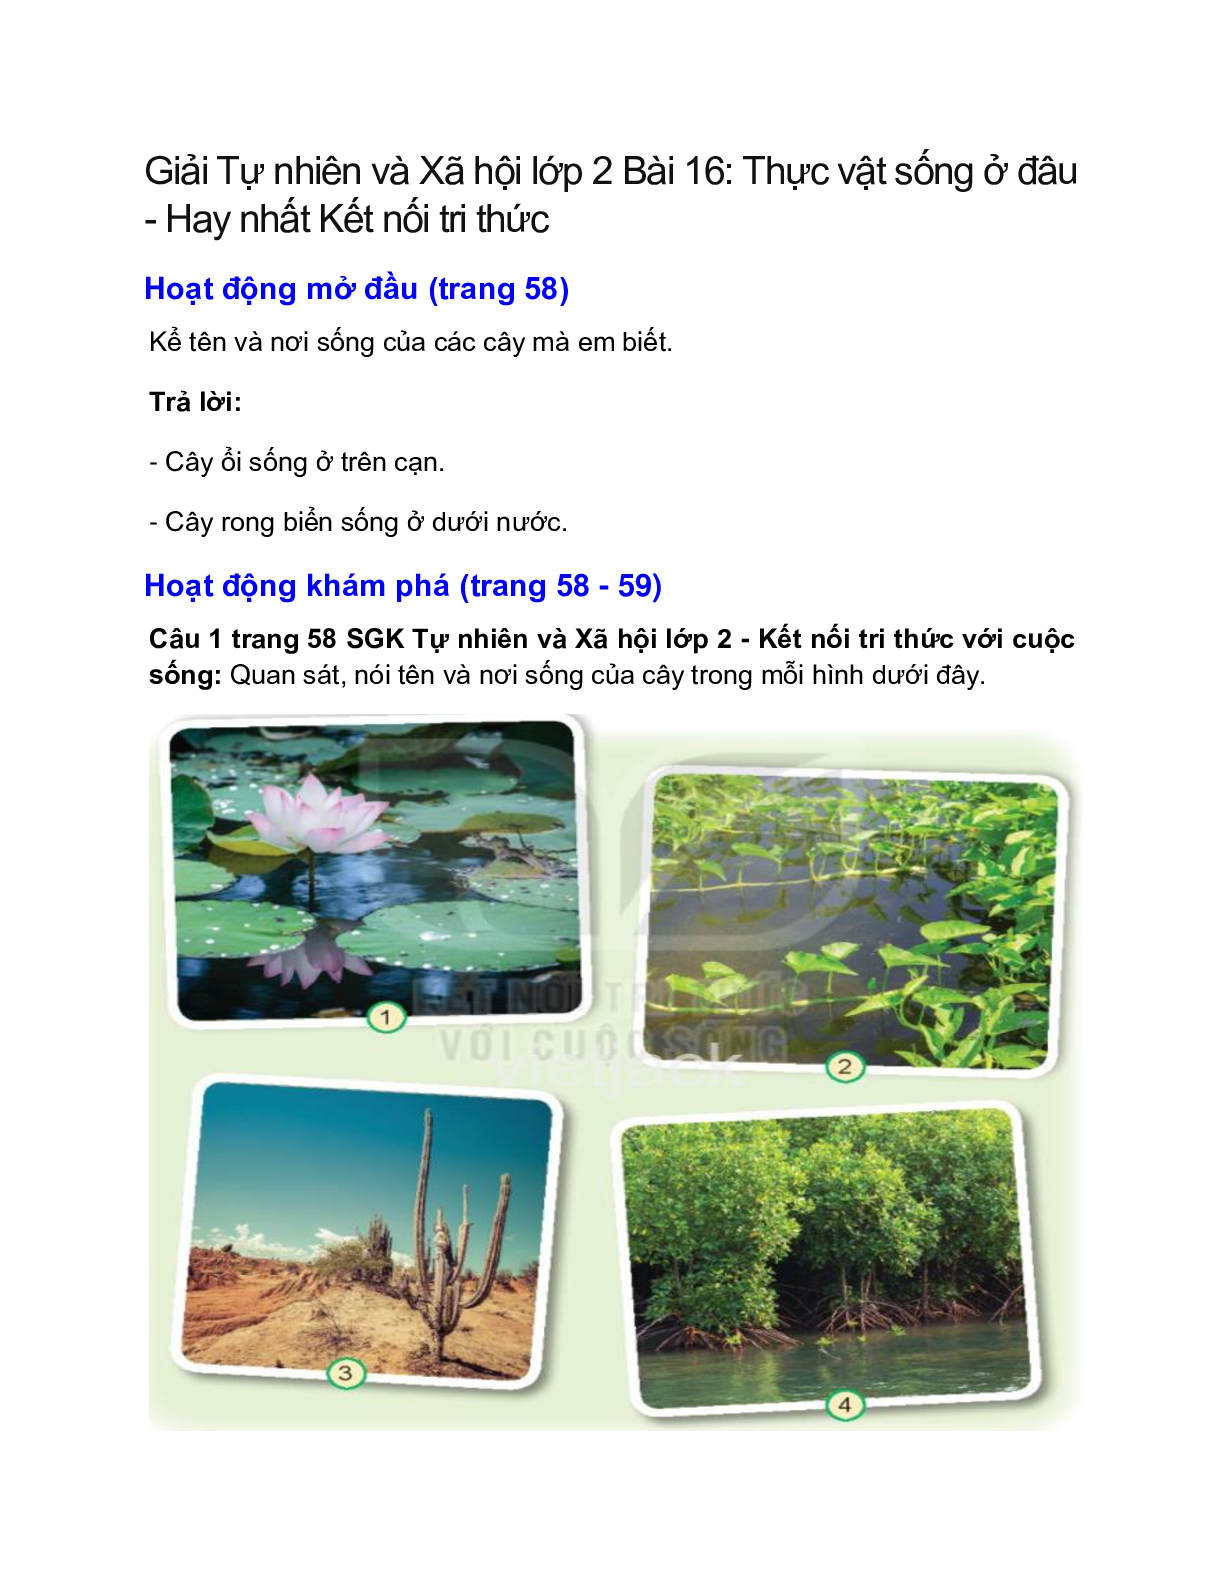 Giải SGK Tự nhiên và Xã hội lớp 2 trang 58, 59, 60, 61 Bài 16: Thực vật sống ở đâu – Kết nối tri thức (trang 1)